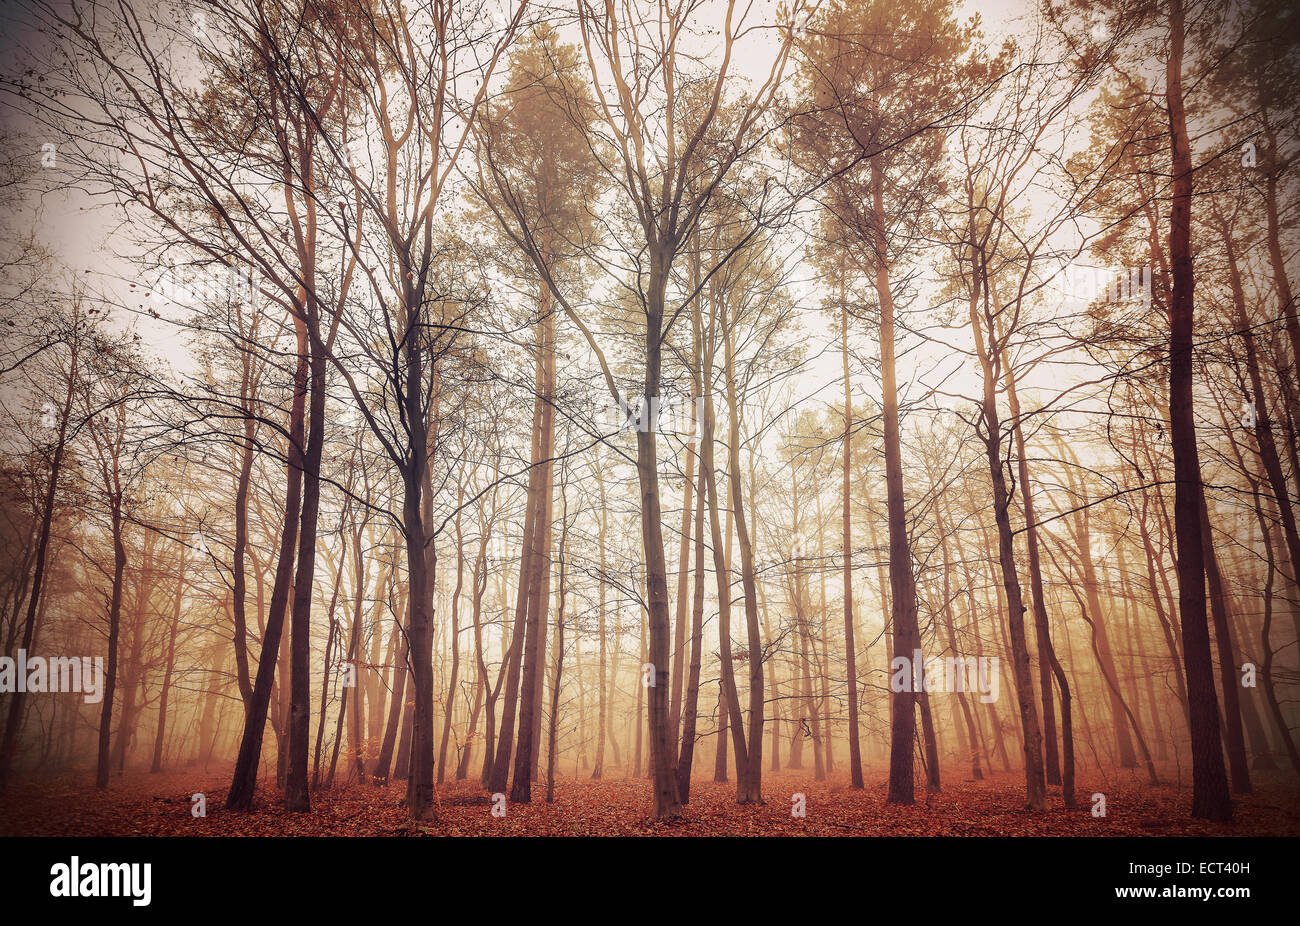 Retro-gefiltertes Bild von einem nebligen Wald. Stockfoto